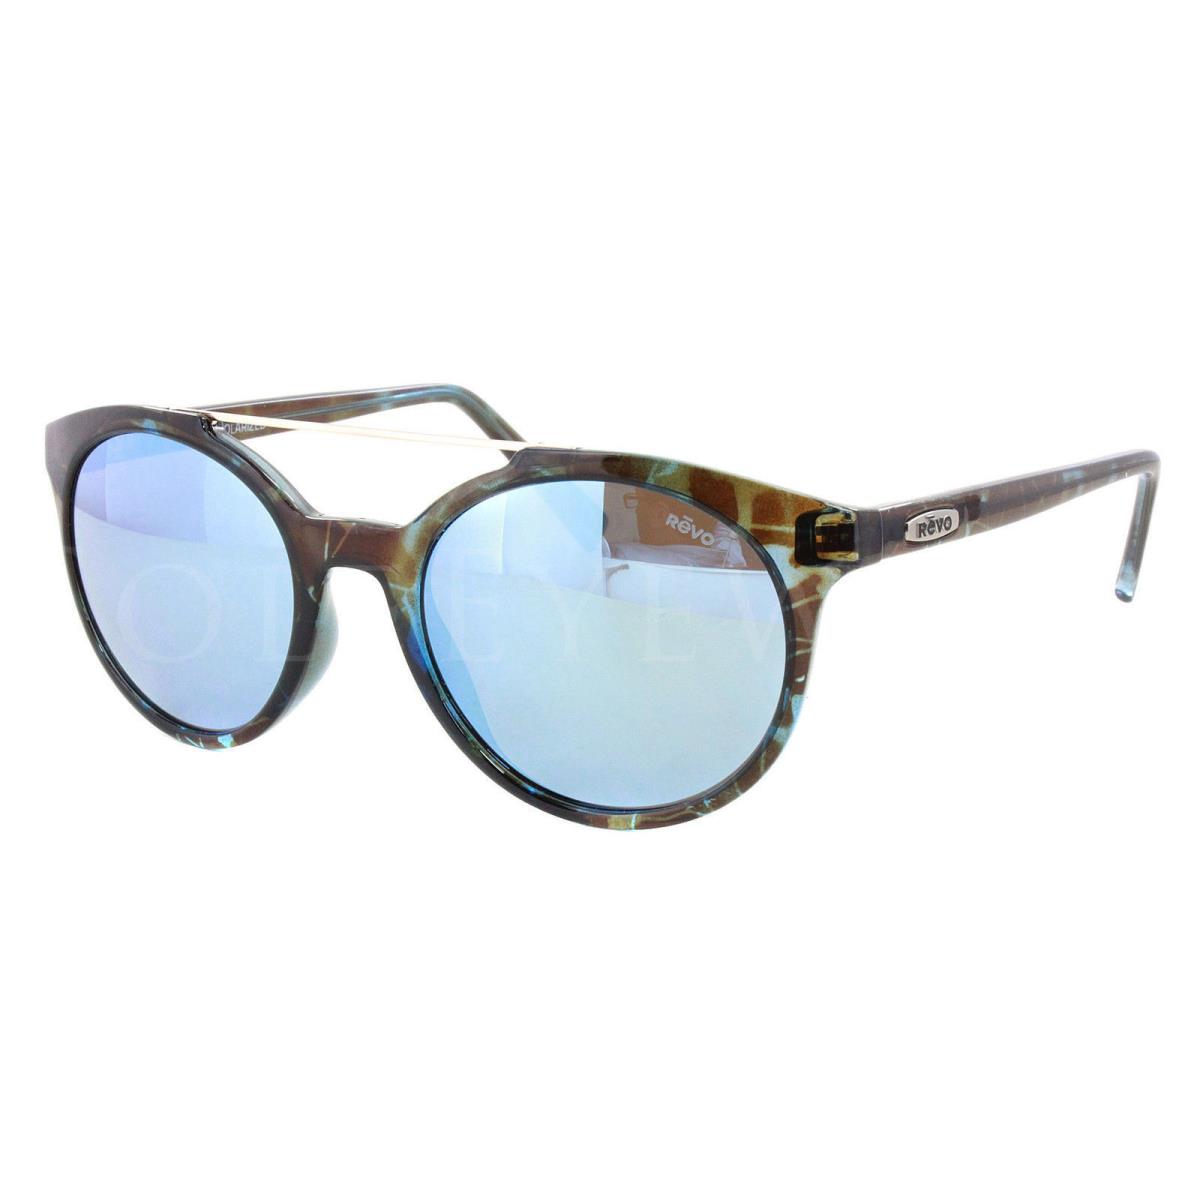 Revo sunglasses  - Tortoise Frame, Blue Lens